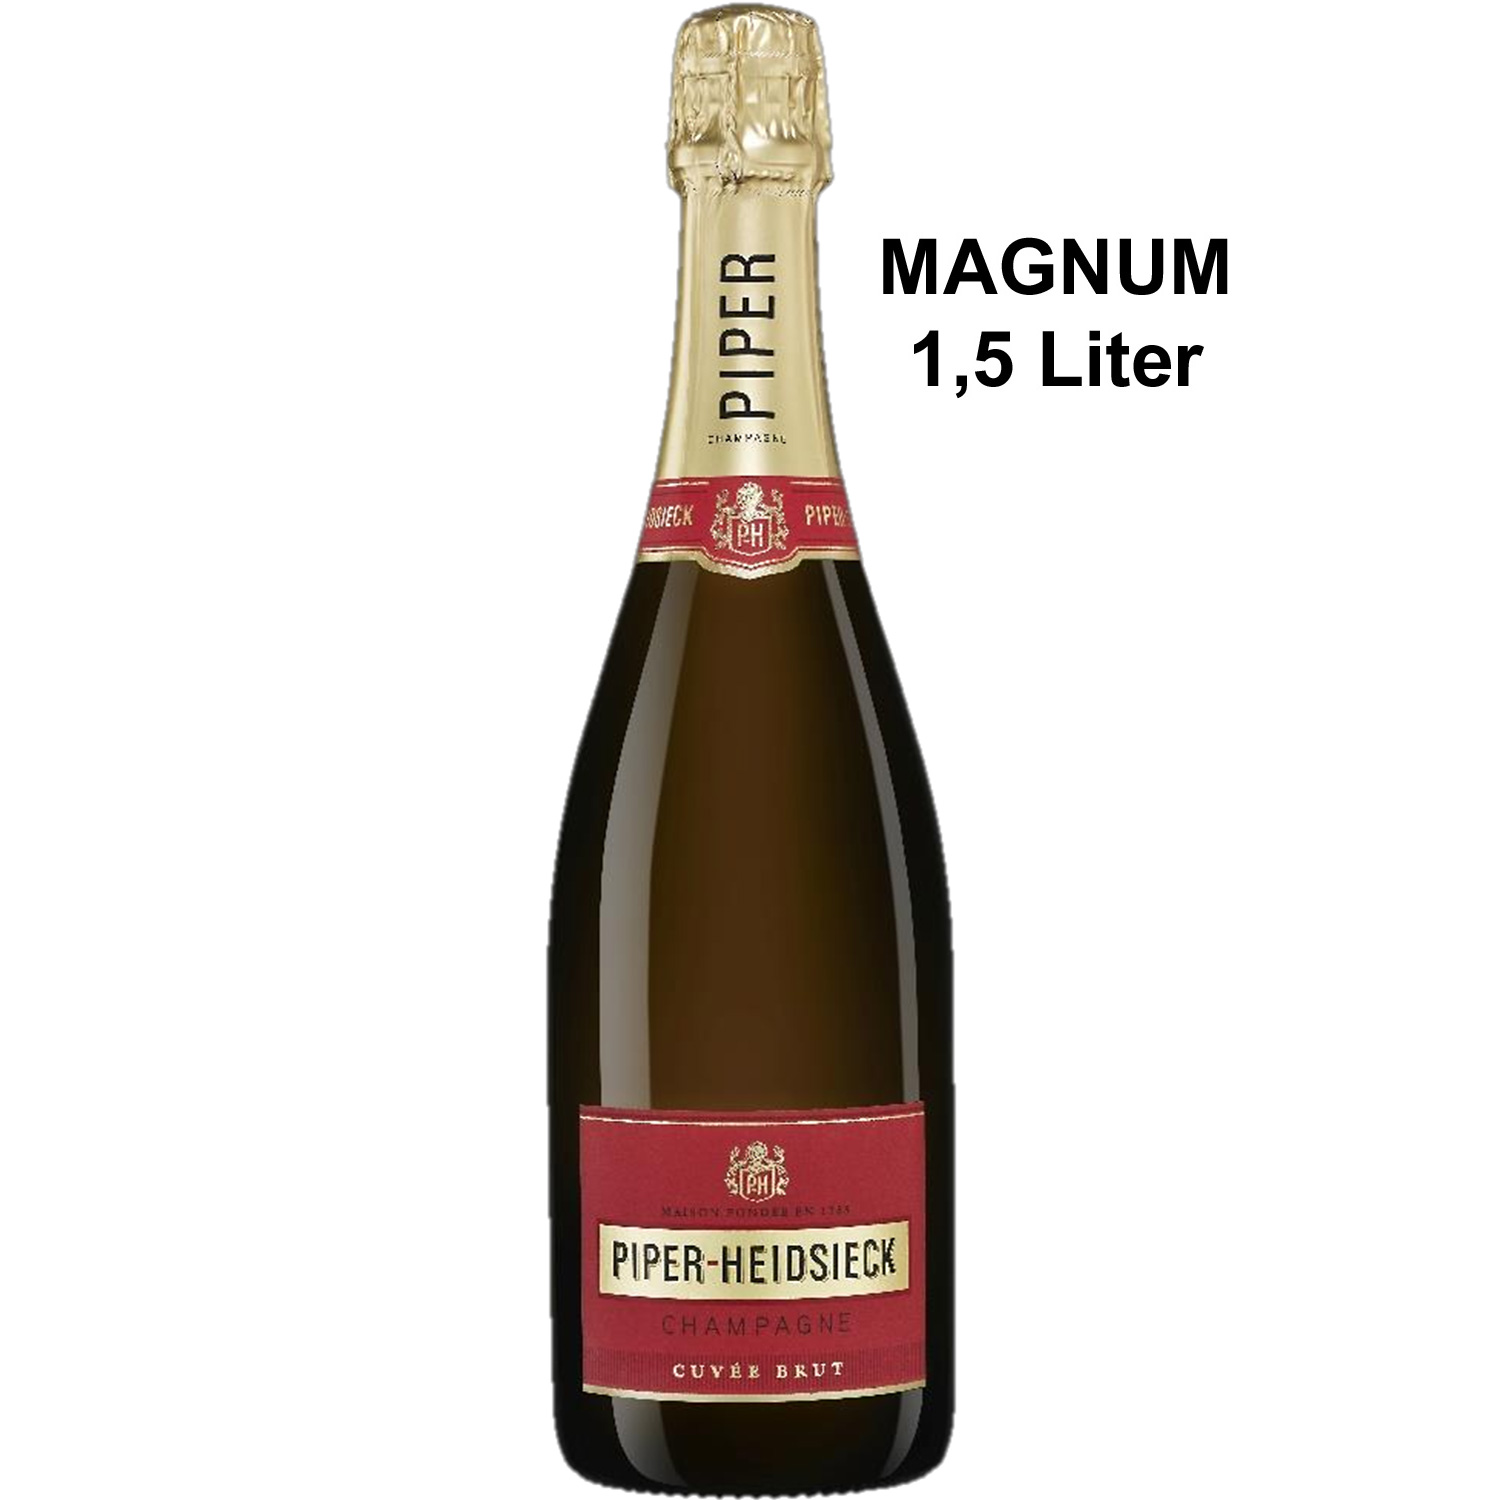 Champagne Piper-Heidsieck Cuvée Brut AOP Magnum